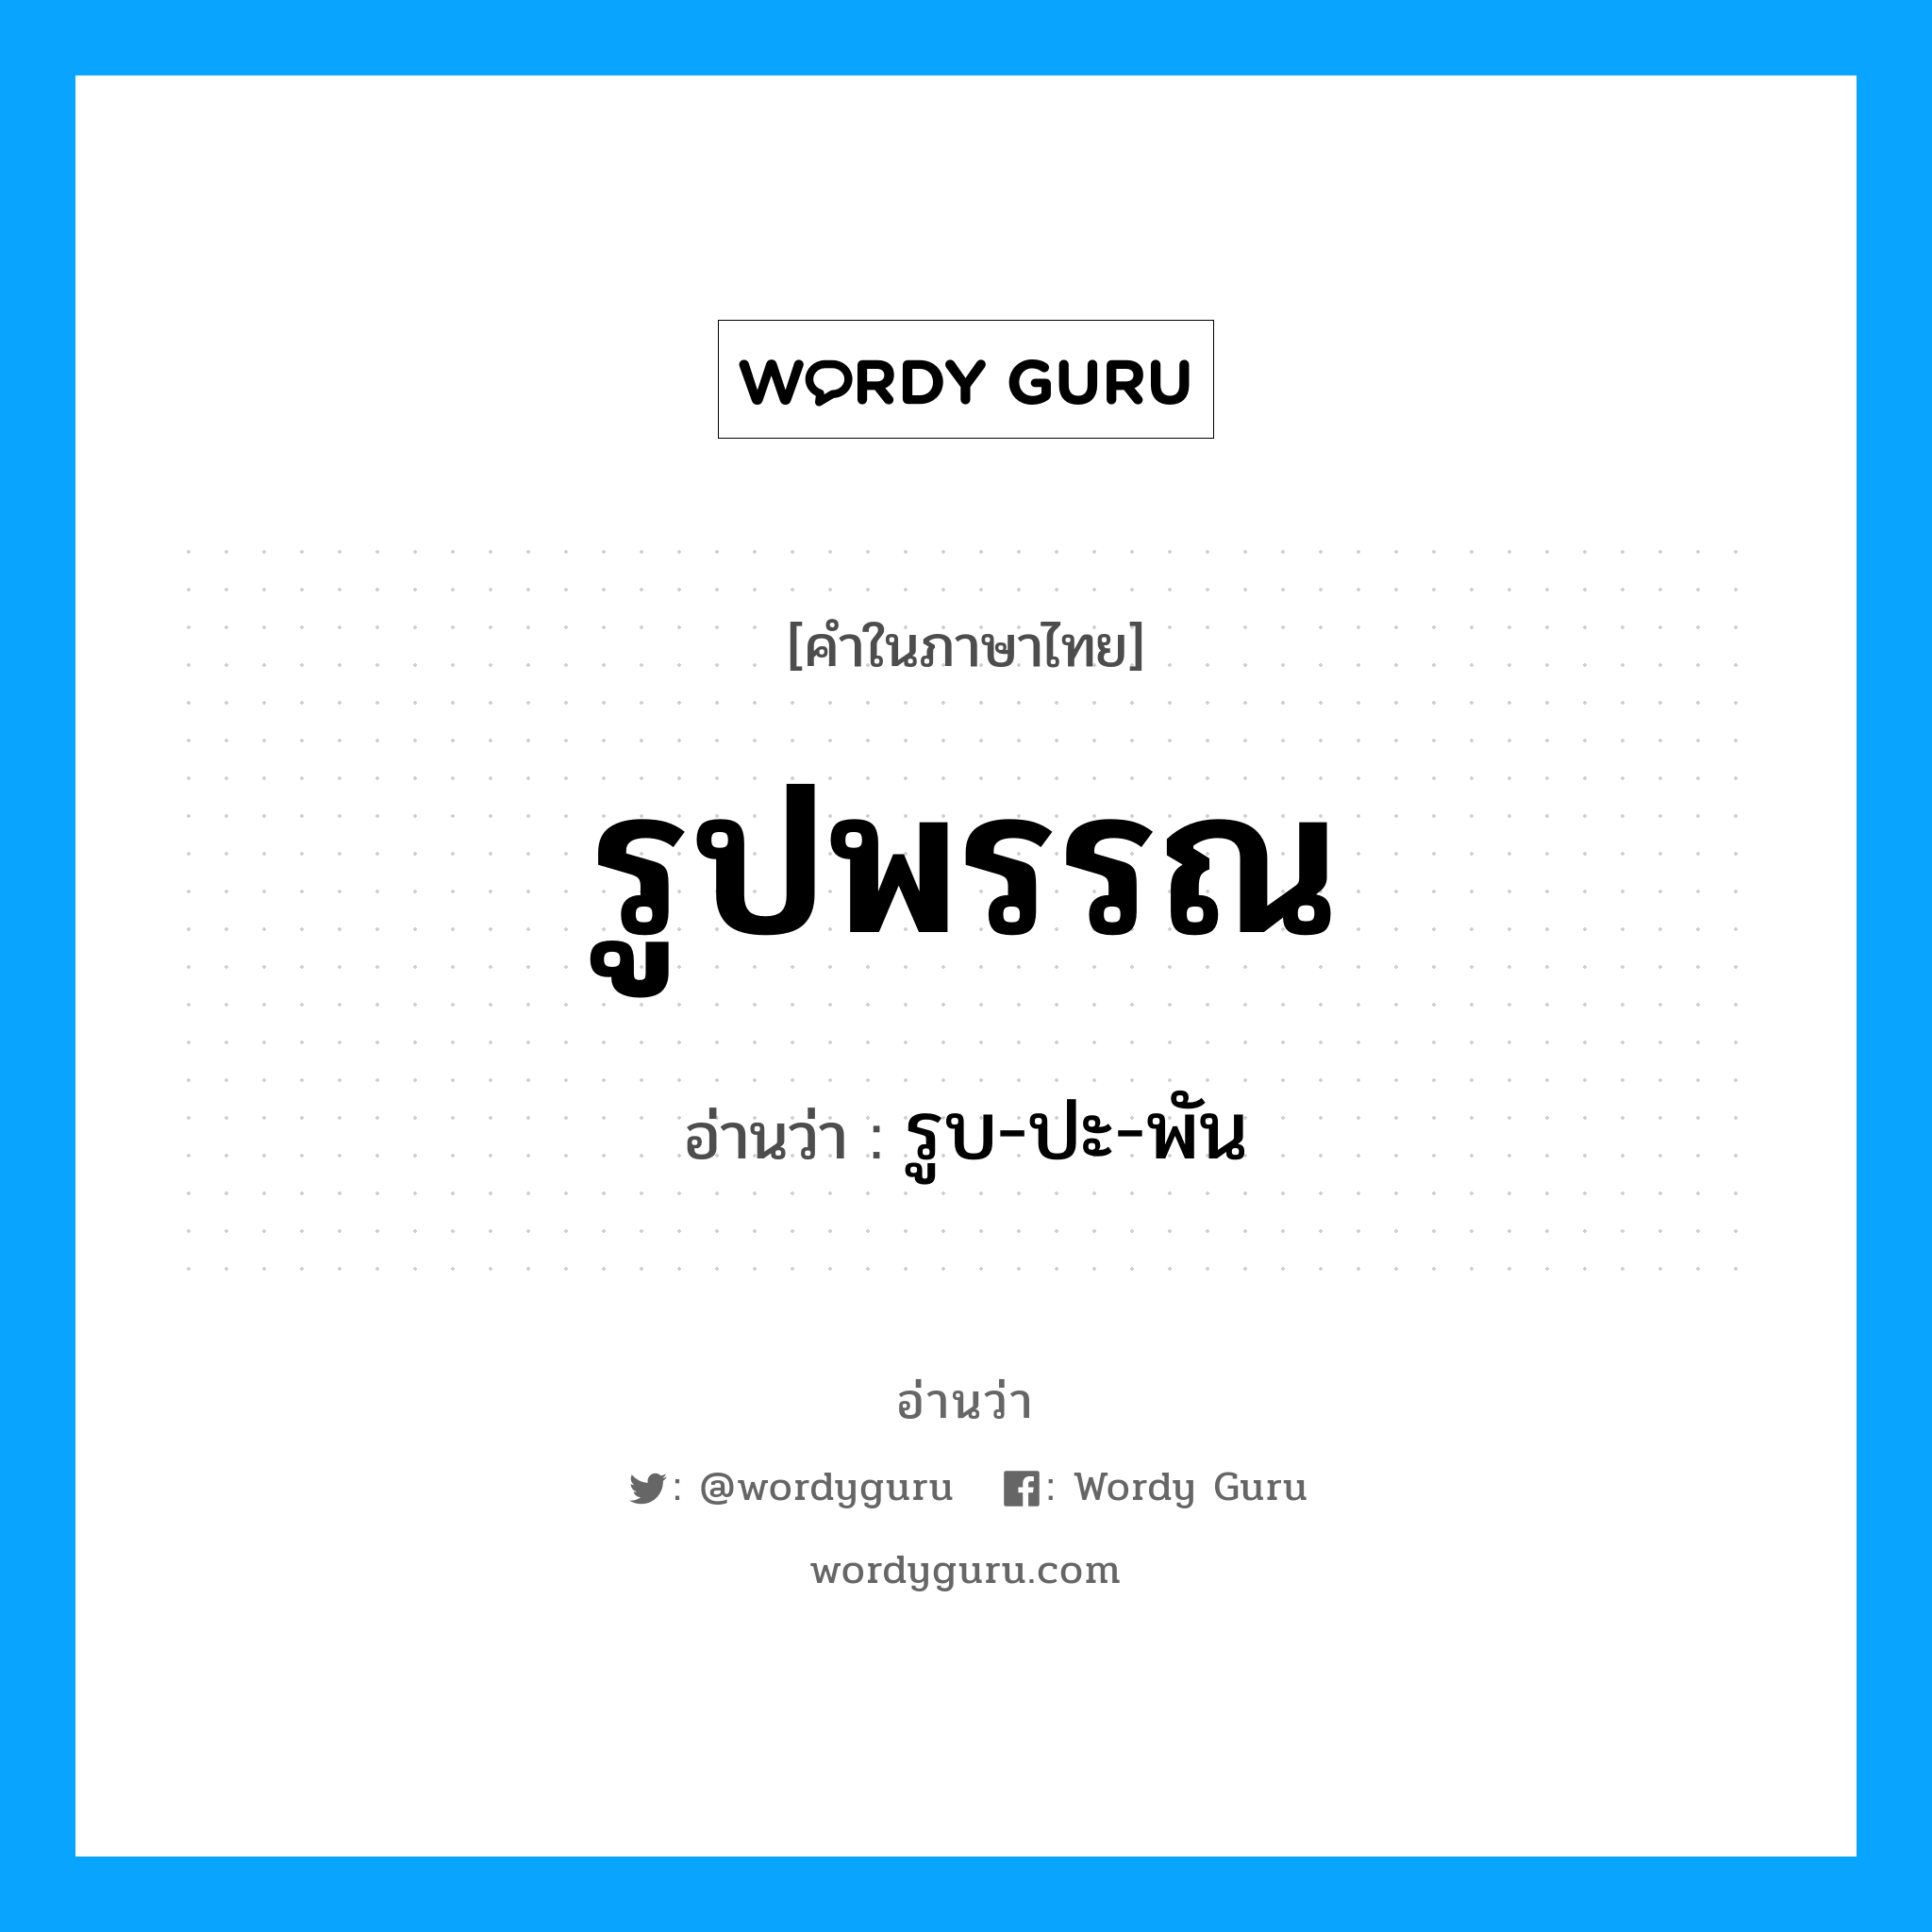 รูบ-ปะ-พัน เป็นคำอ่านของคำไหน?, คำในภาษาไทย รูบ-ปะ-พัน อ่านว่า รูปพรรณ